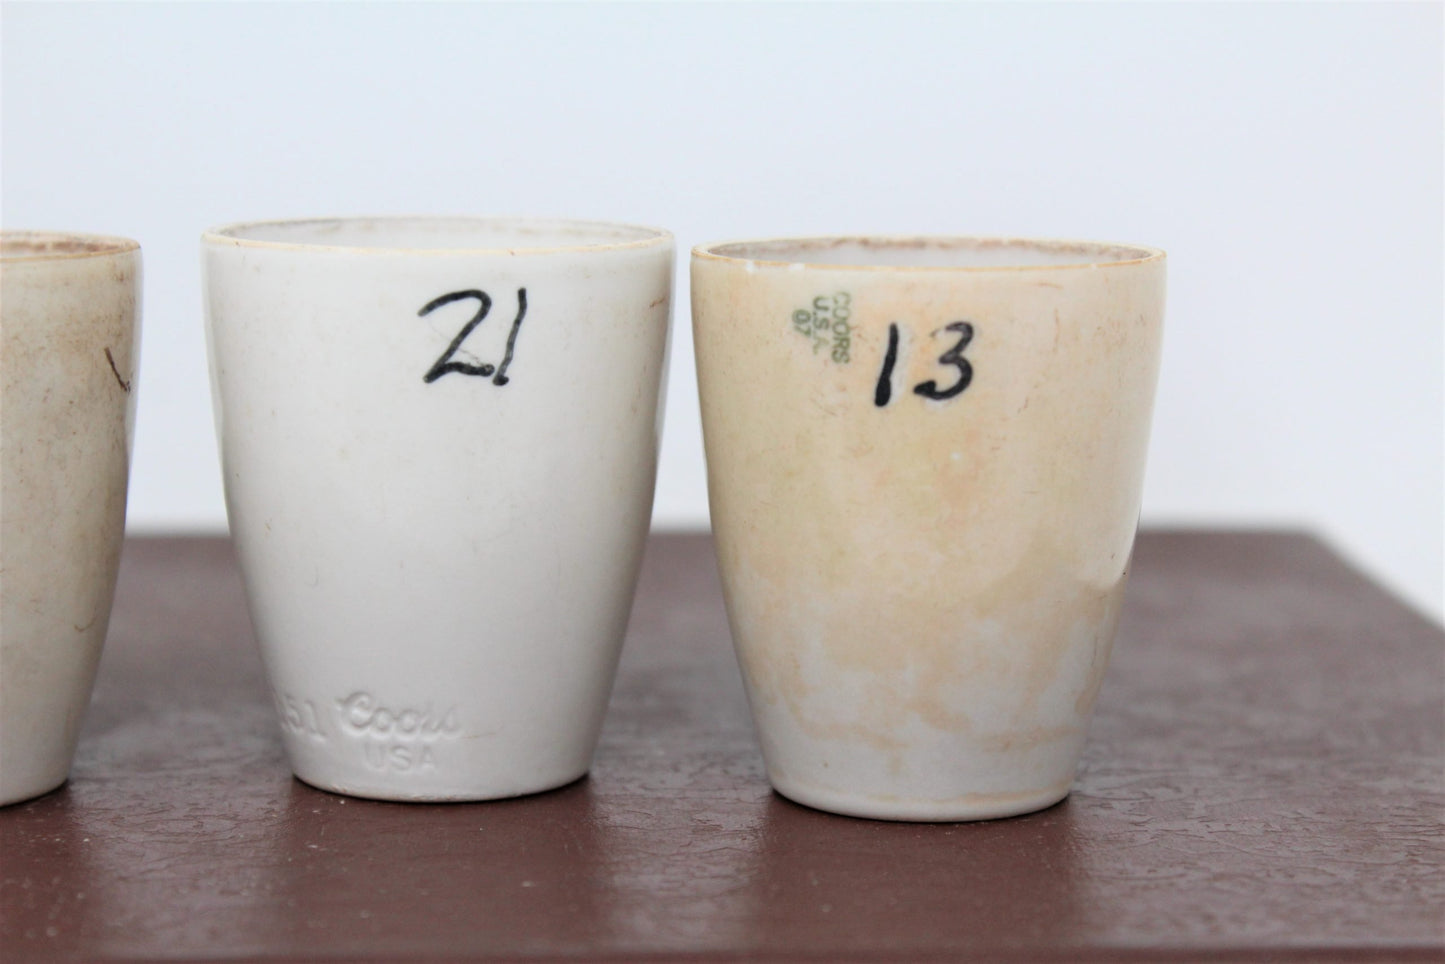 CoorsTek High-Form Crucibles, Porcelain - Cole-Parmer